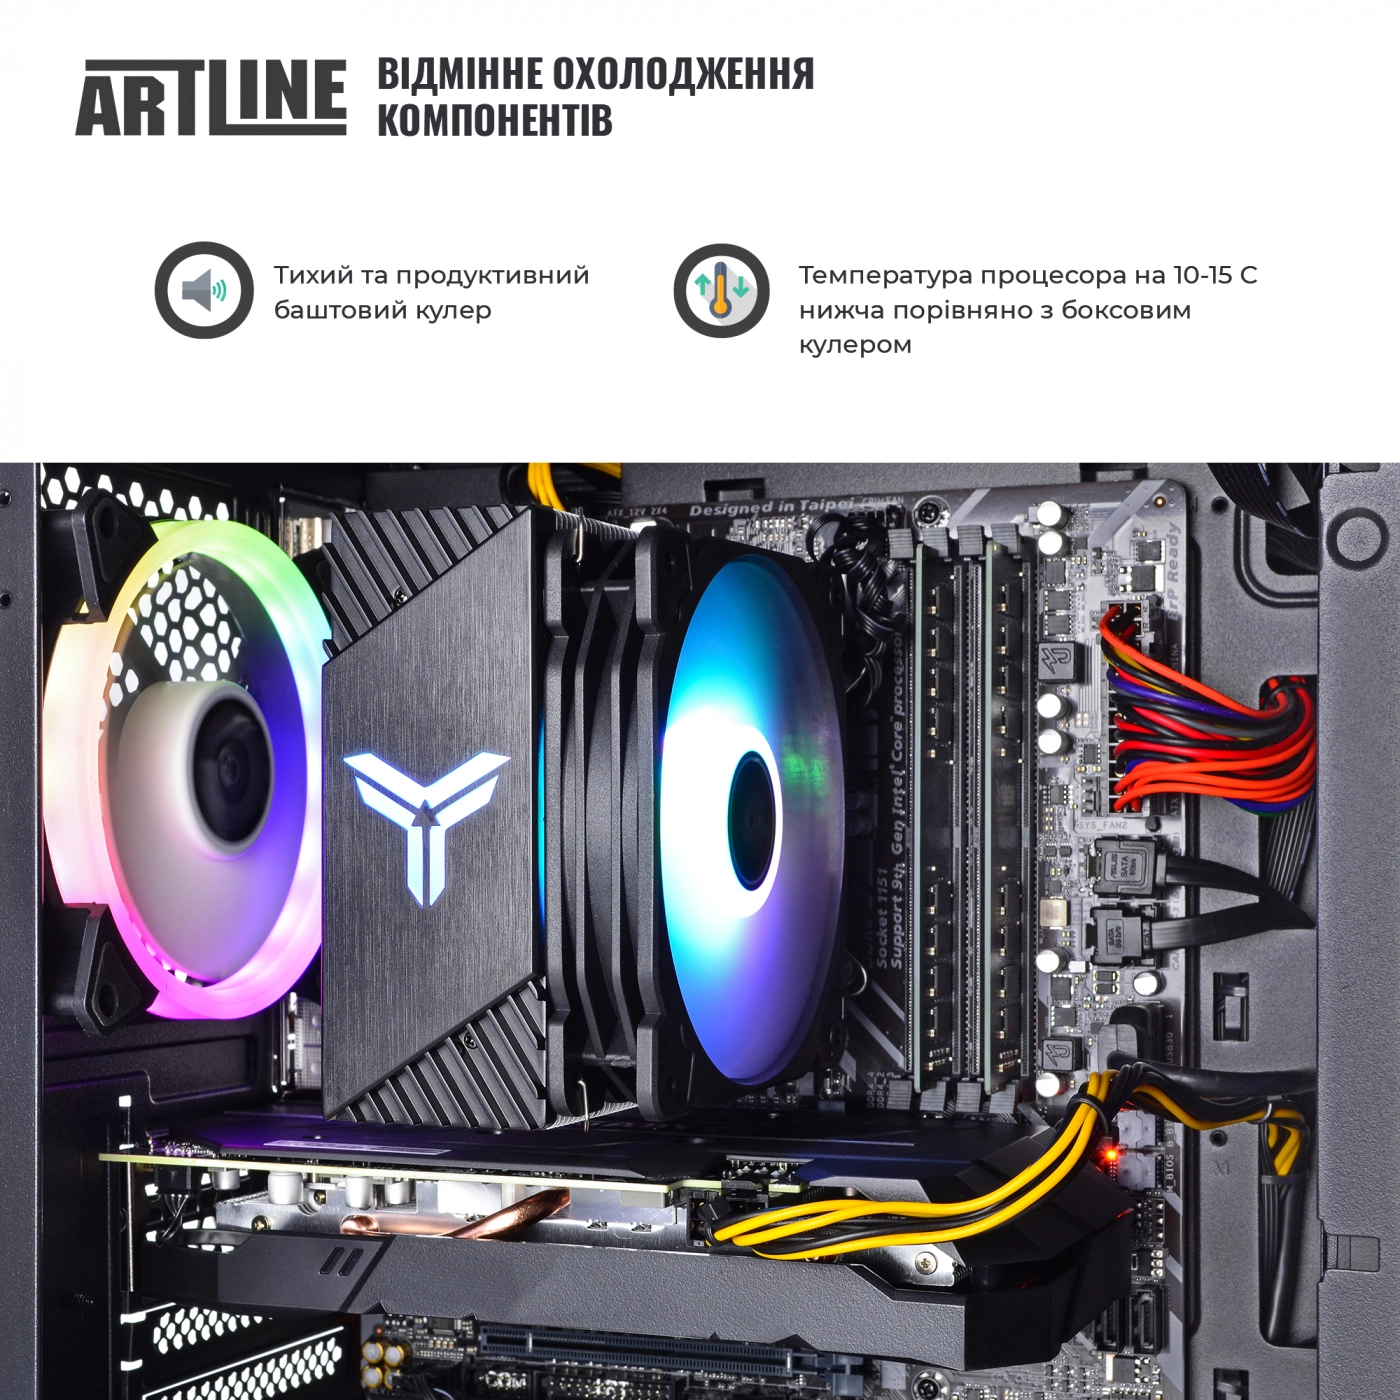 Купить Компьютер ARTLINE Gaming X71v41 - фото 4